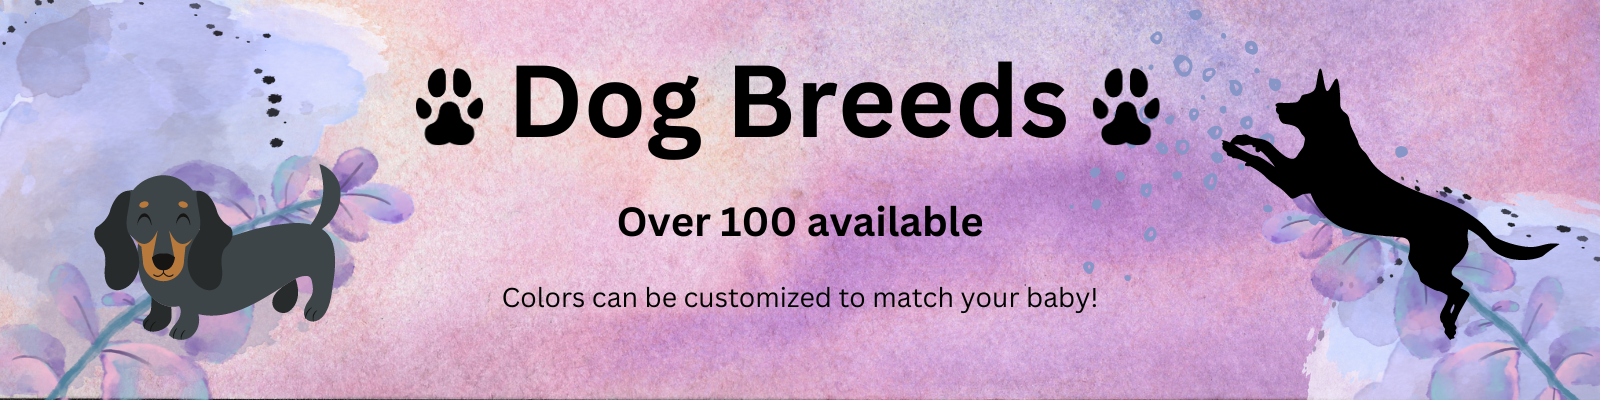 Over 100 Dog Breeds